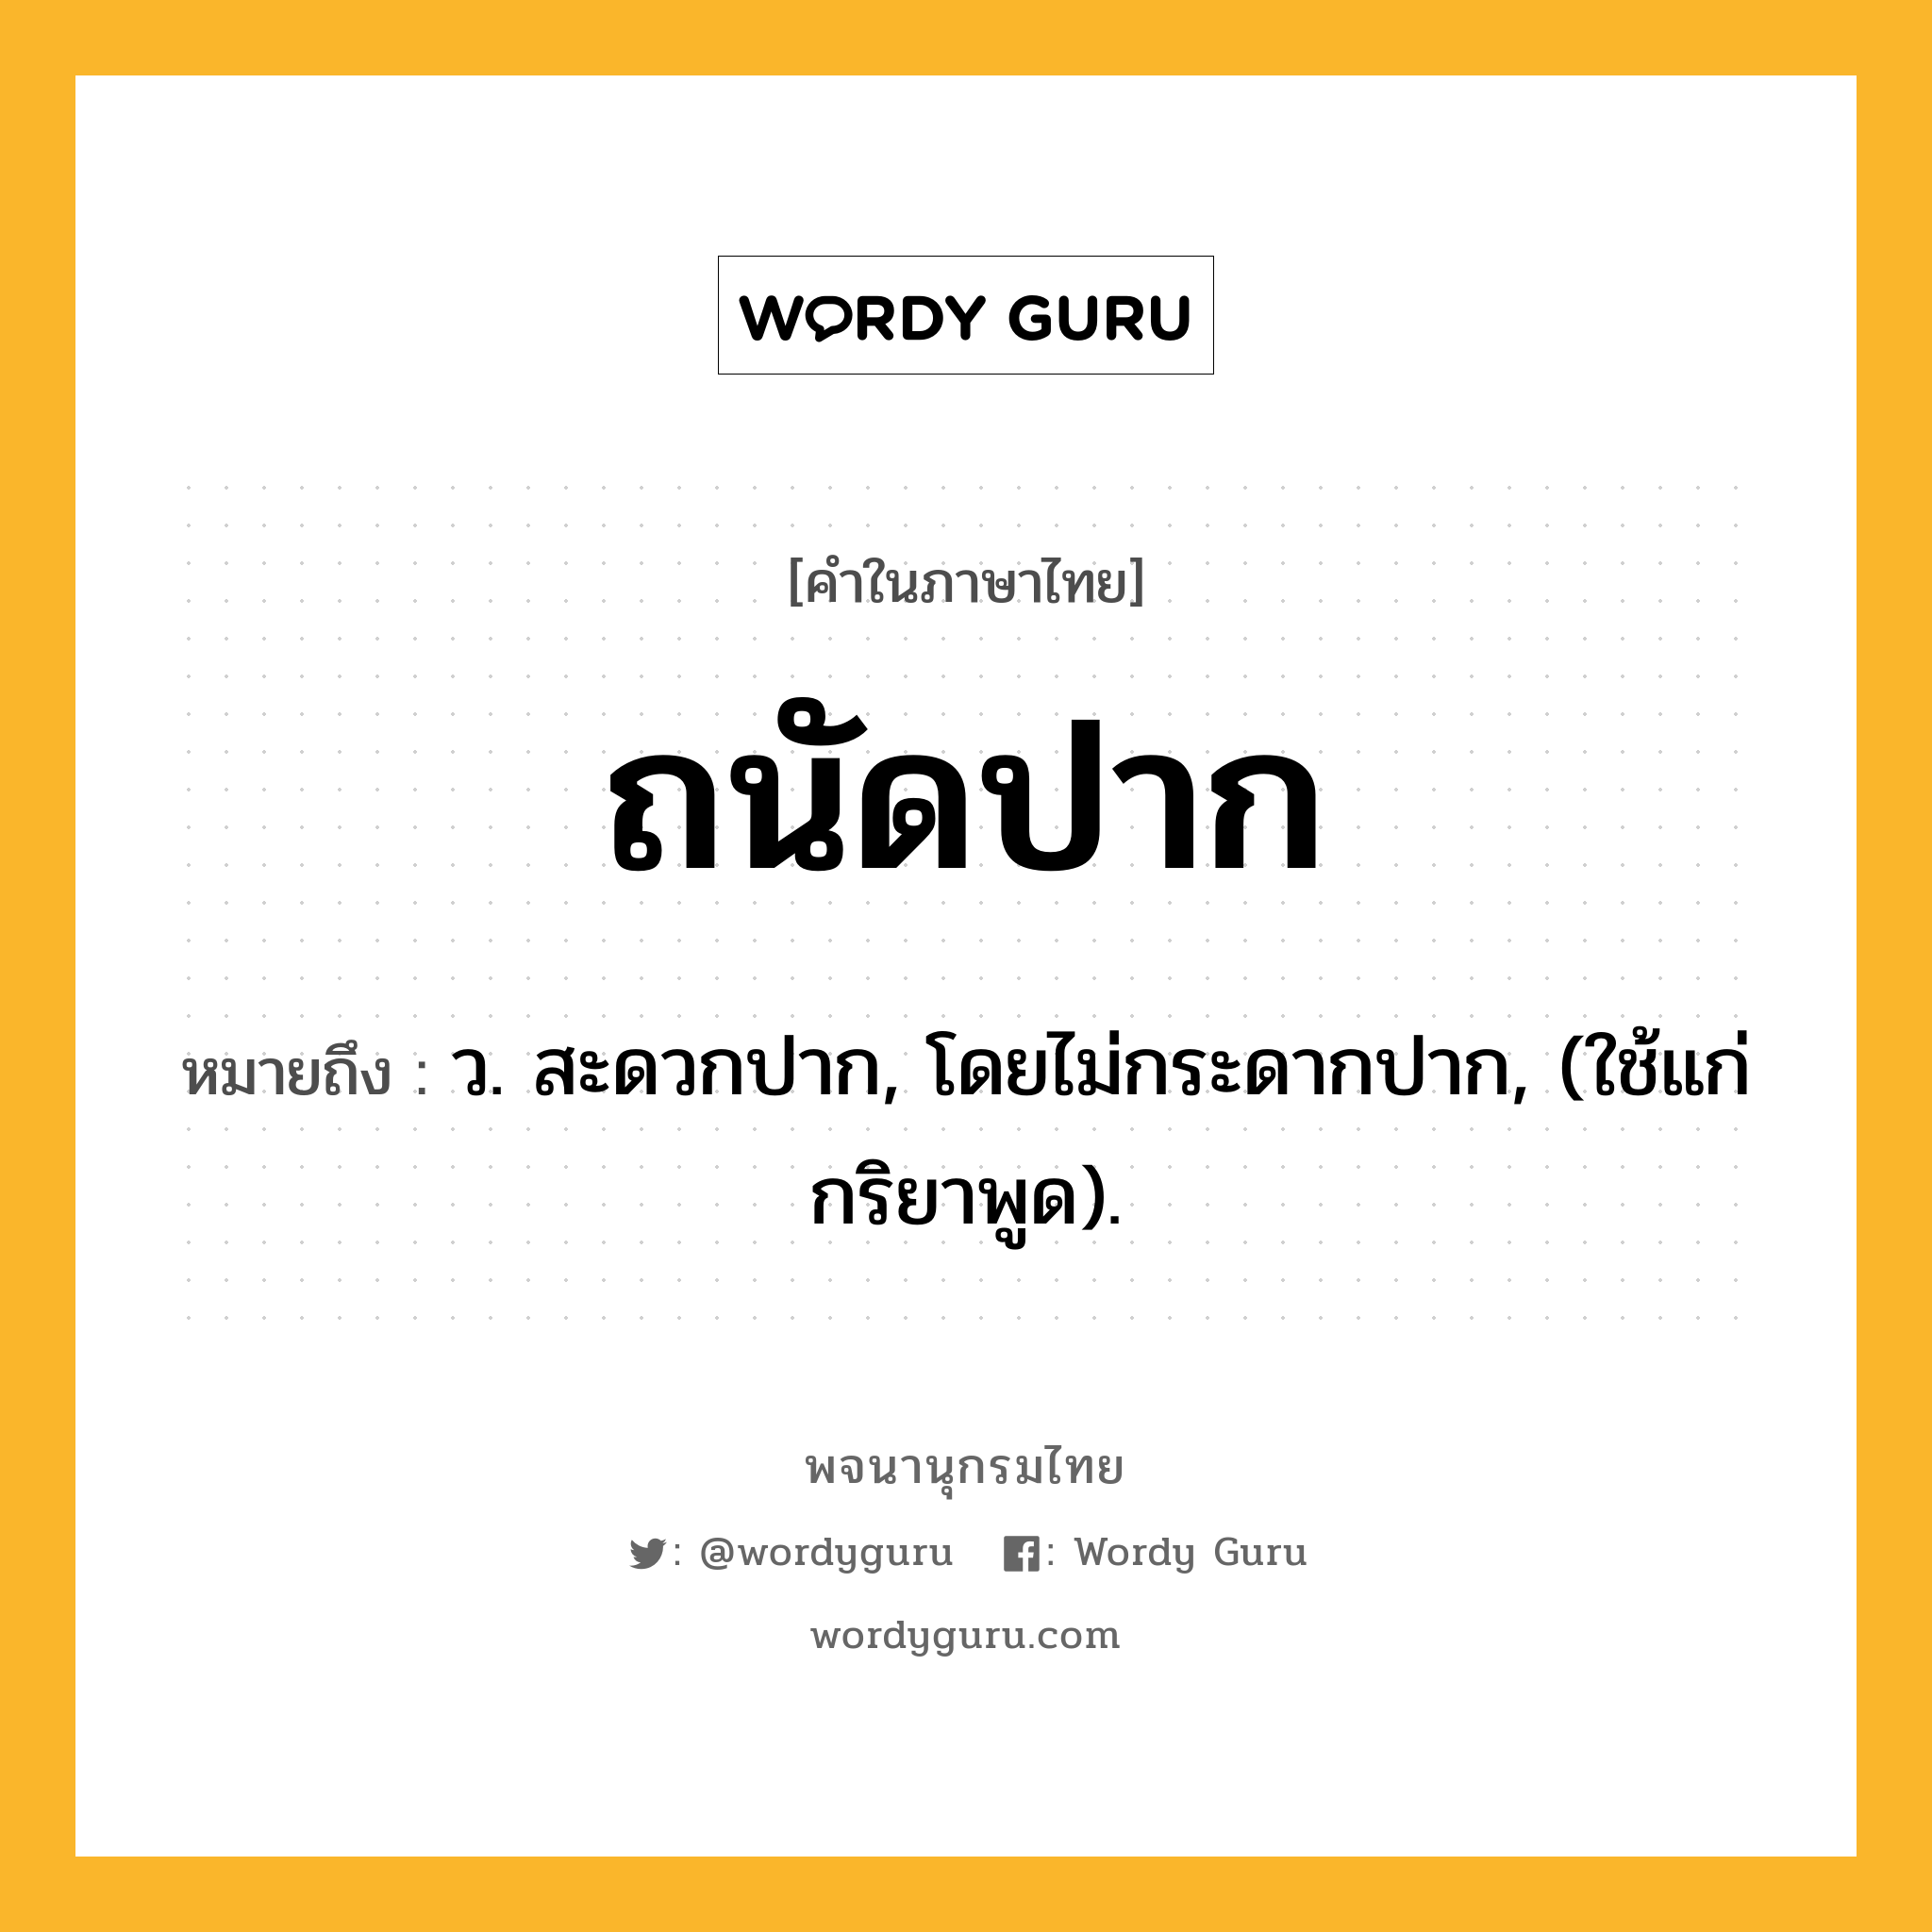 ถนัดปาก หมายถึงอะไร?, คำในภาษาไทย ถนัดปาก หมายถึง ว. สะดวกปาก, โดยไม่กระดากปาก, (ใช้แก่กริยาพูด).